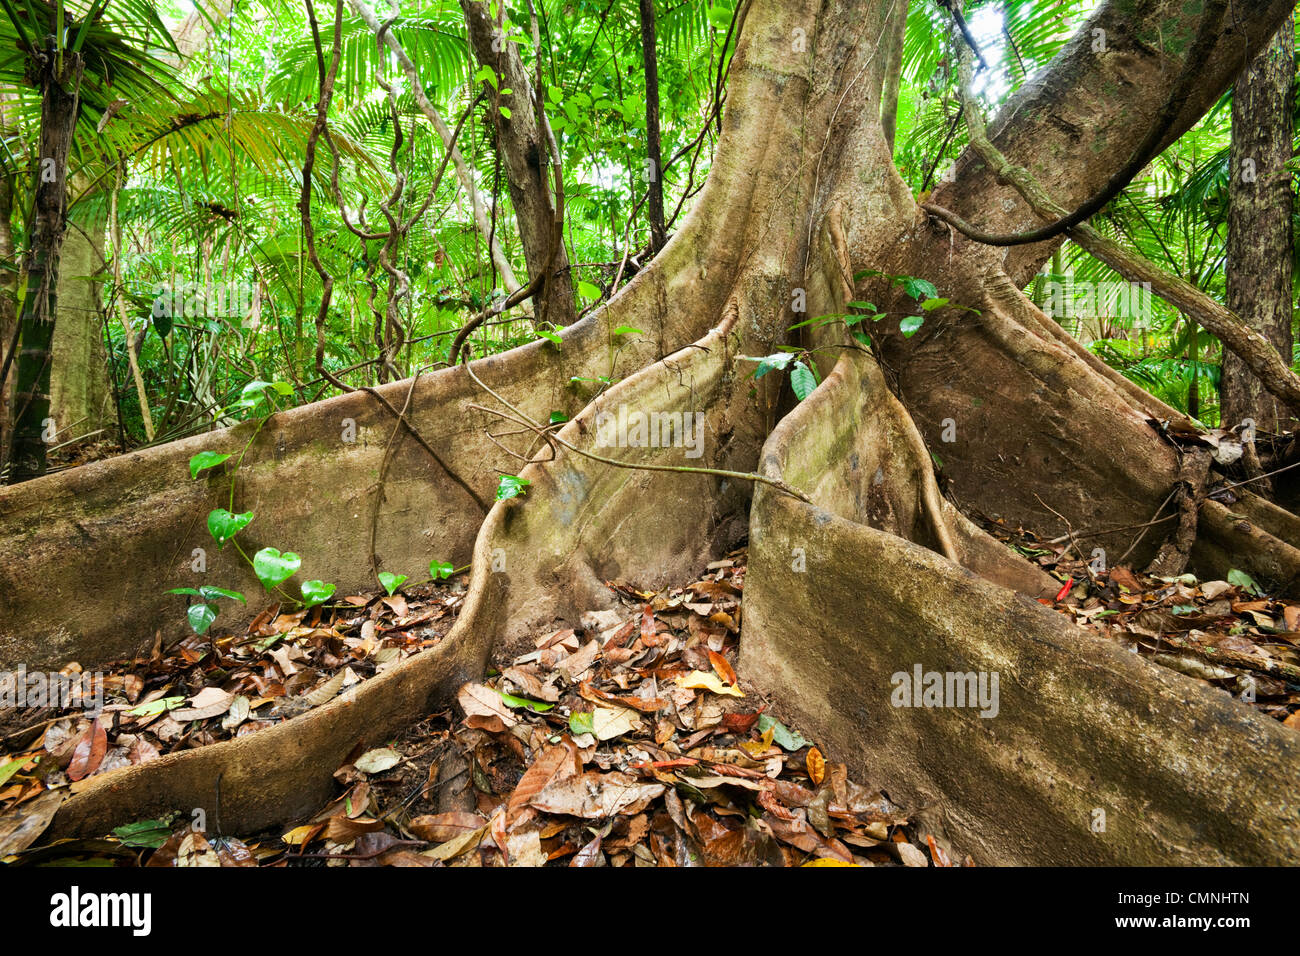 Butress racines d'un arbre. Parc national de Daintree, Queensland, Australie Banque D'Images